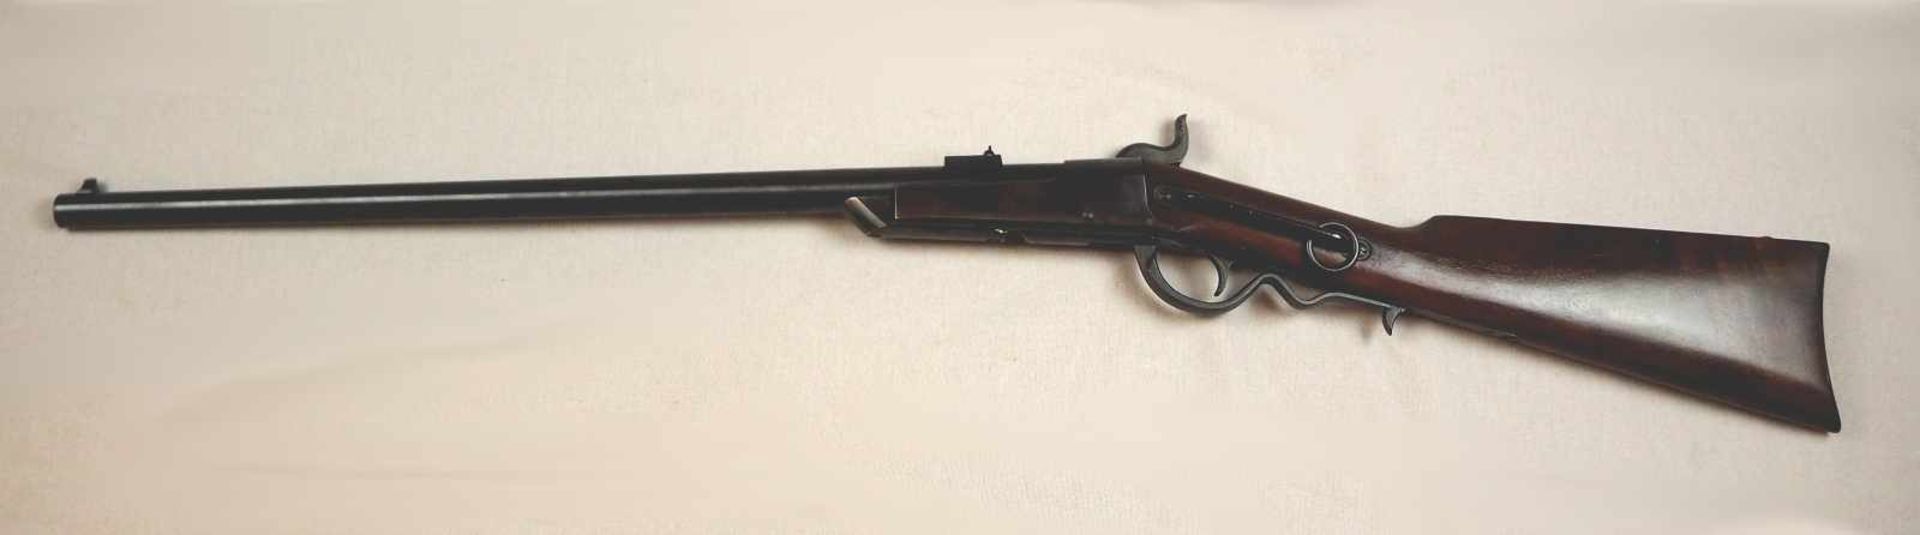 1 Gewehr auf Schloss gem. GALLAGER Mod. 1880 Ermawerke W. GermanyCal. .54 Holzschaft L ca. 99cm